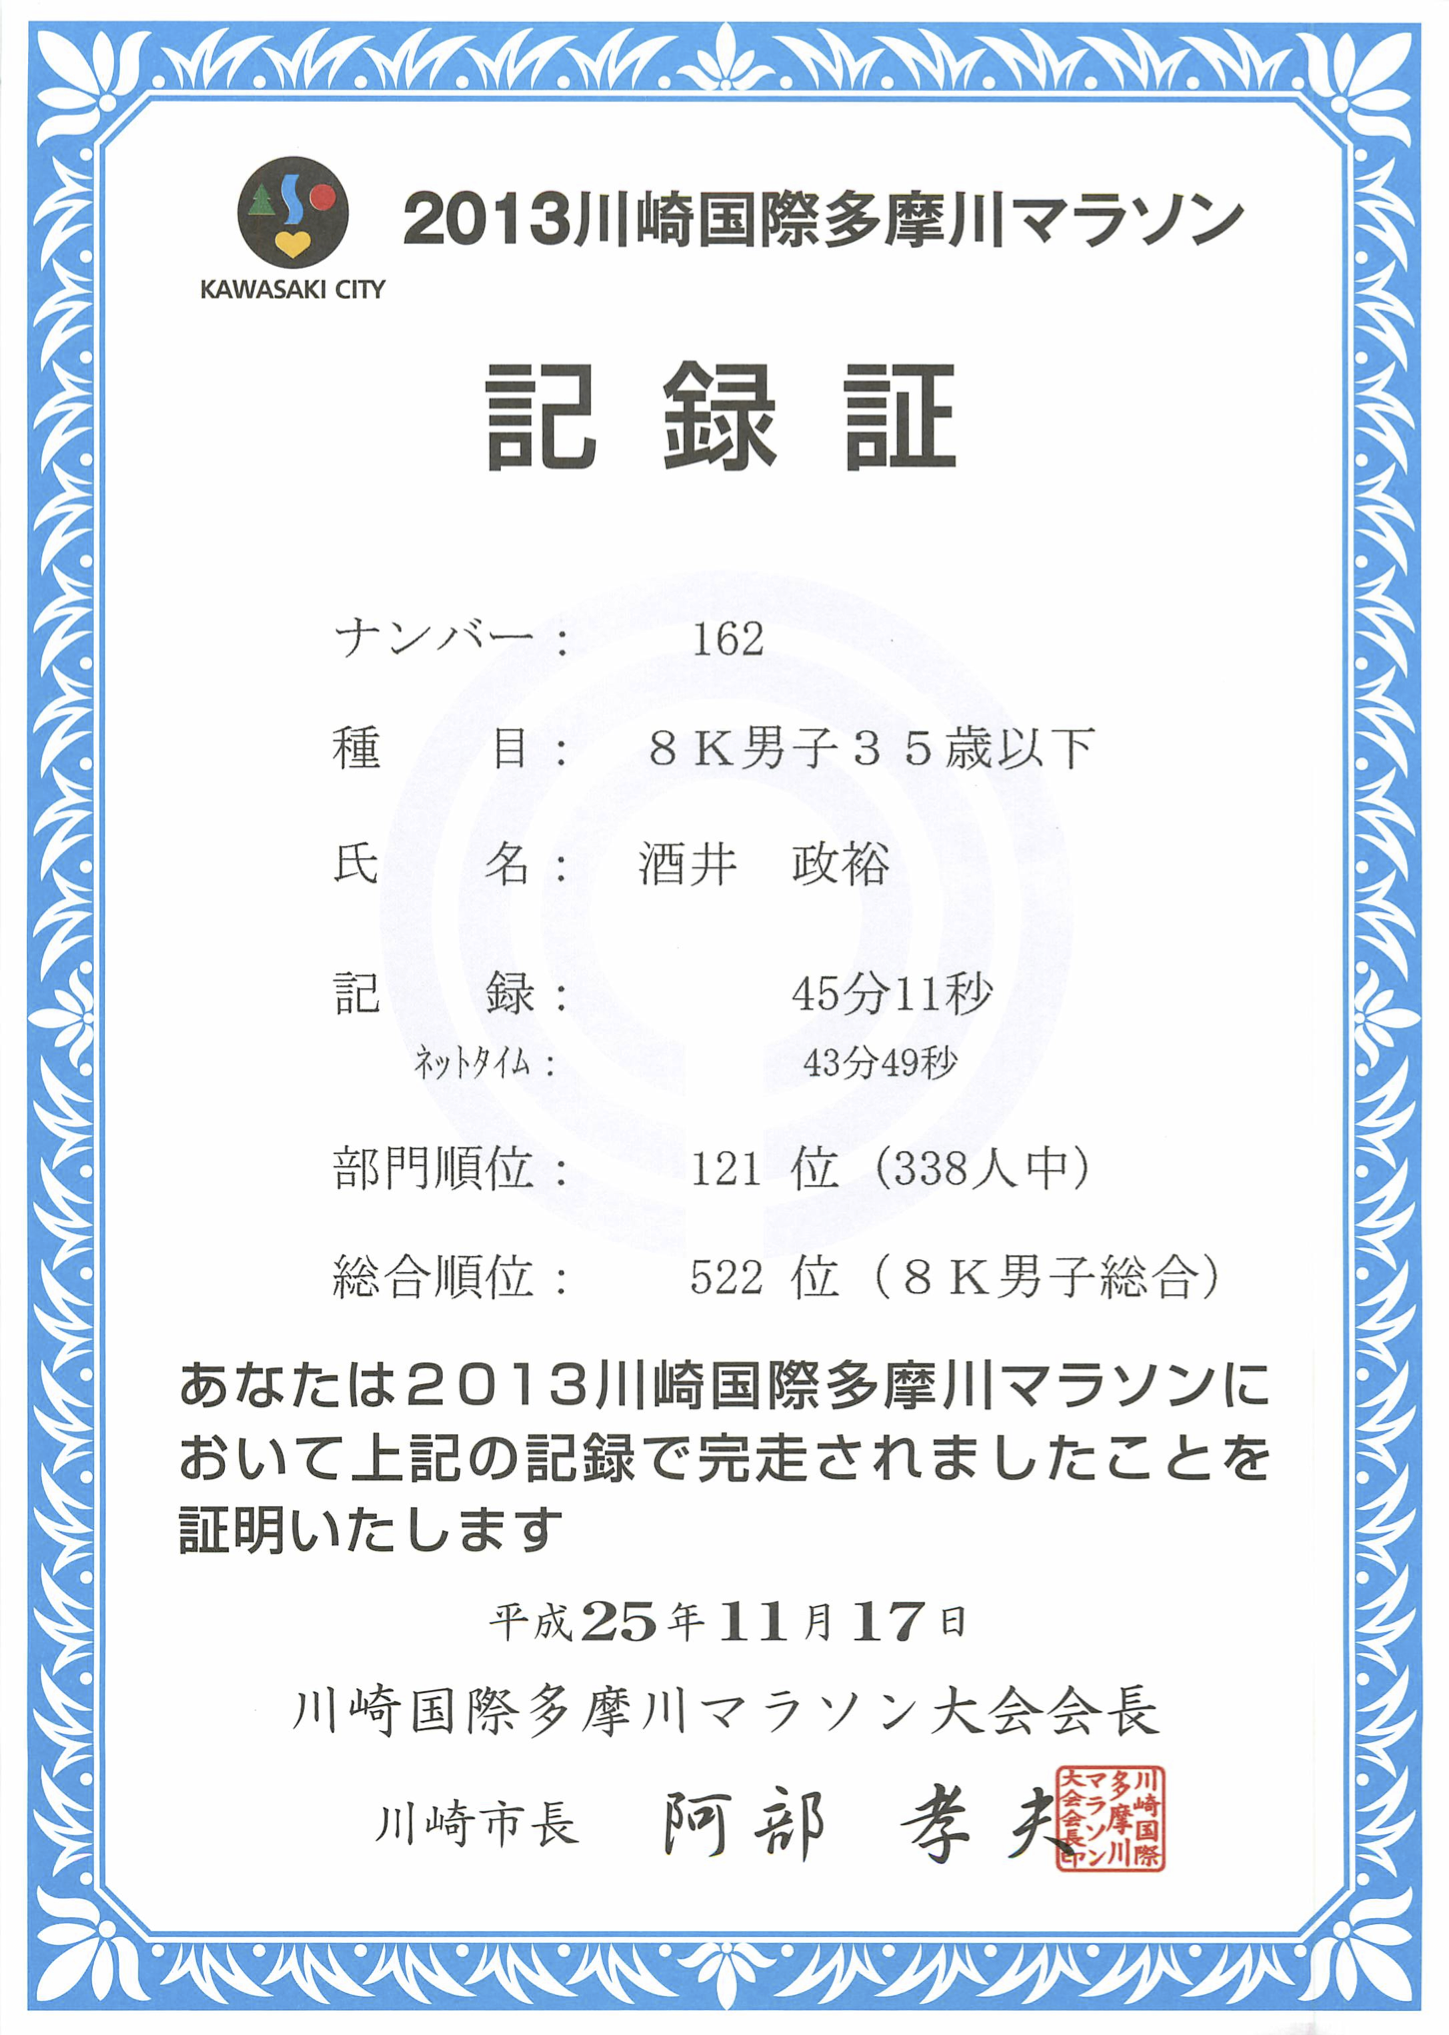 今日参加した2013川崎国際多摩川マラソンの記録証。 8kの部門で記録は45分11秒(ネットタイム43分49秒)。